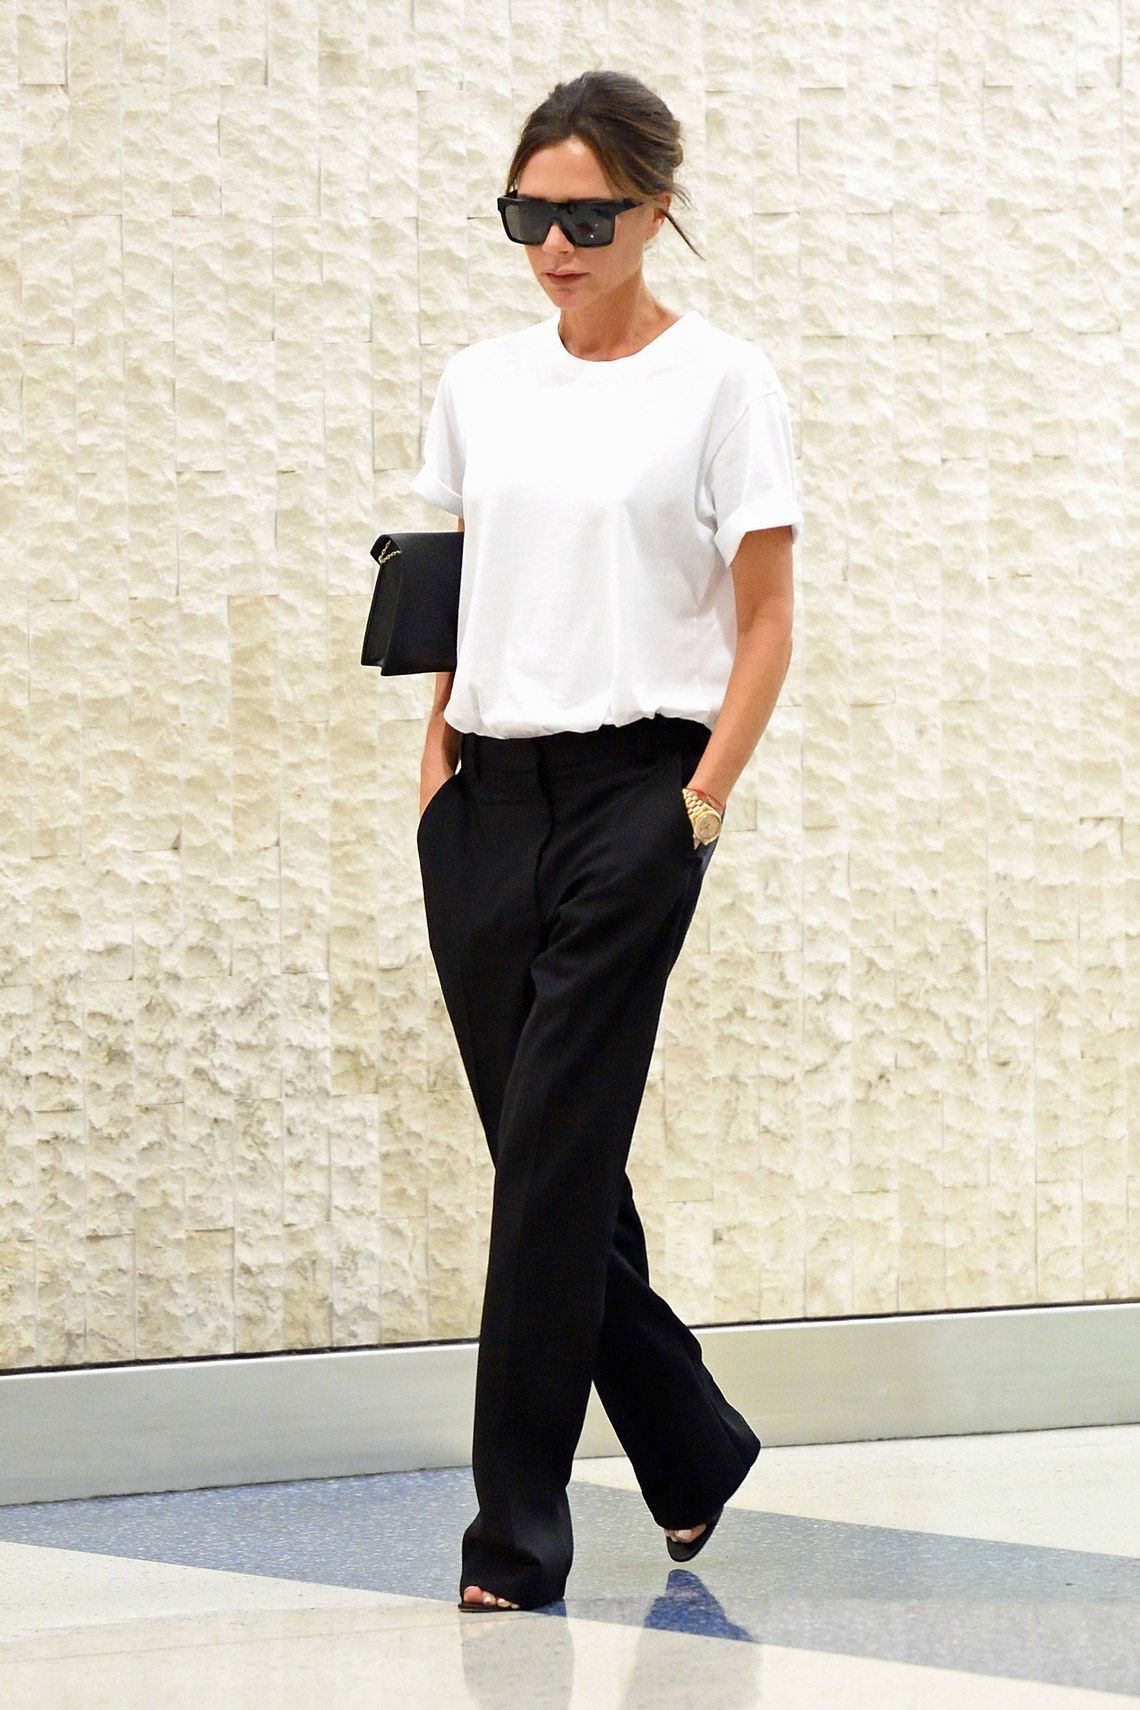 Victoria Beckham phối đồ công sở áo thun xắn tay quần tây đen